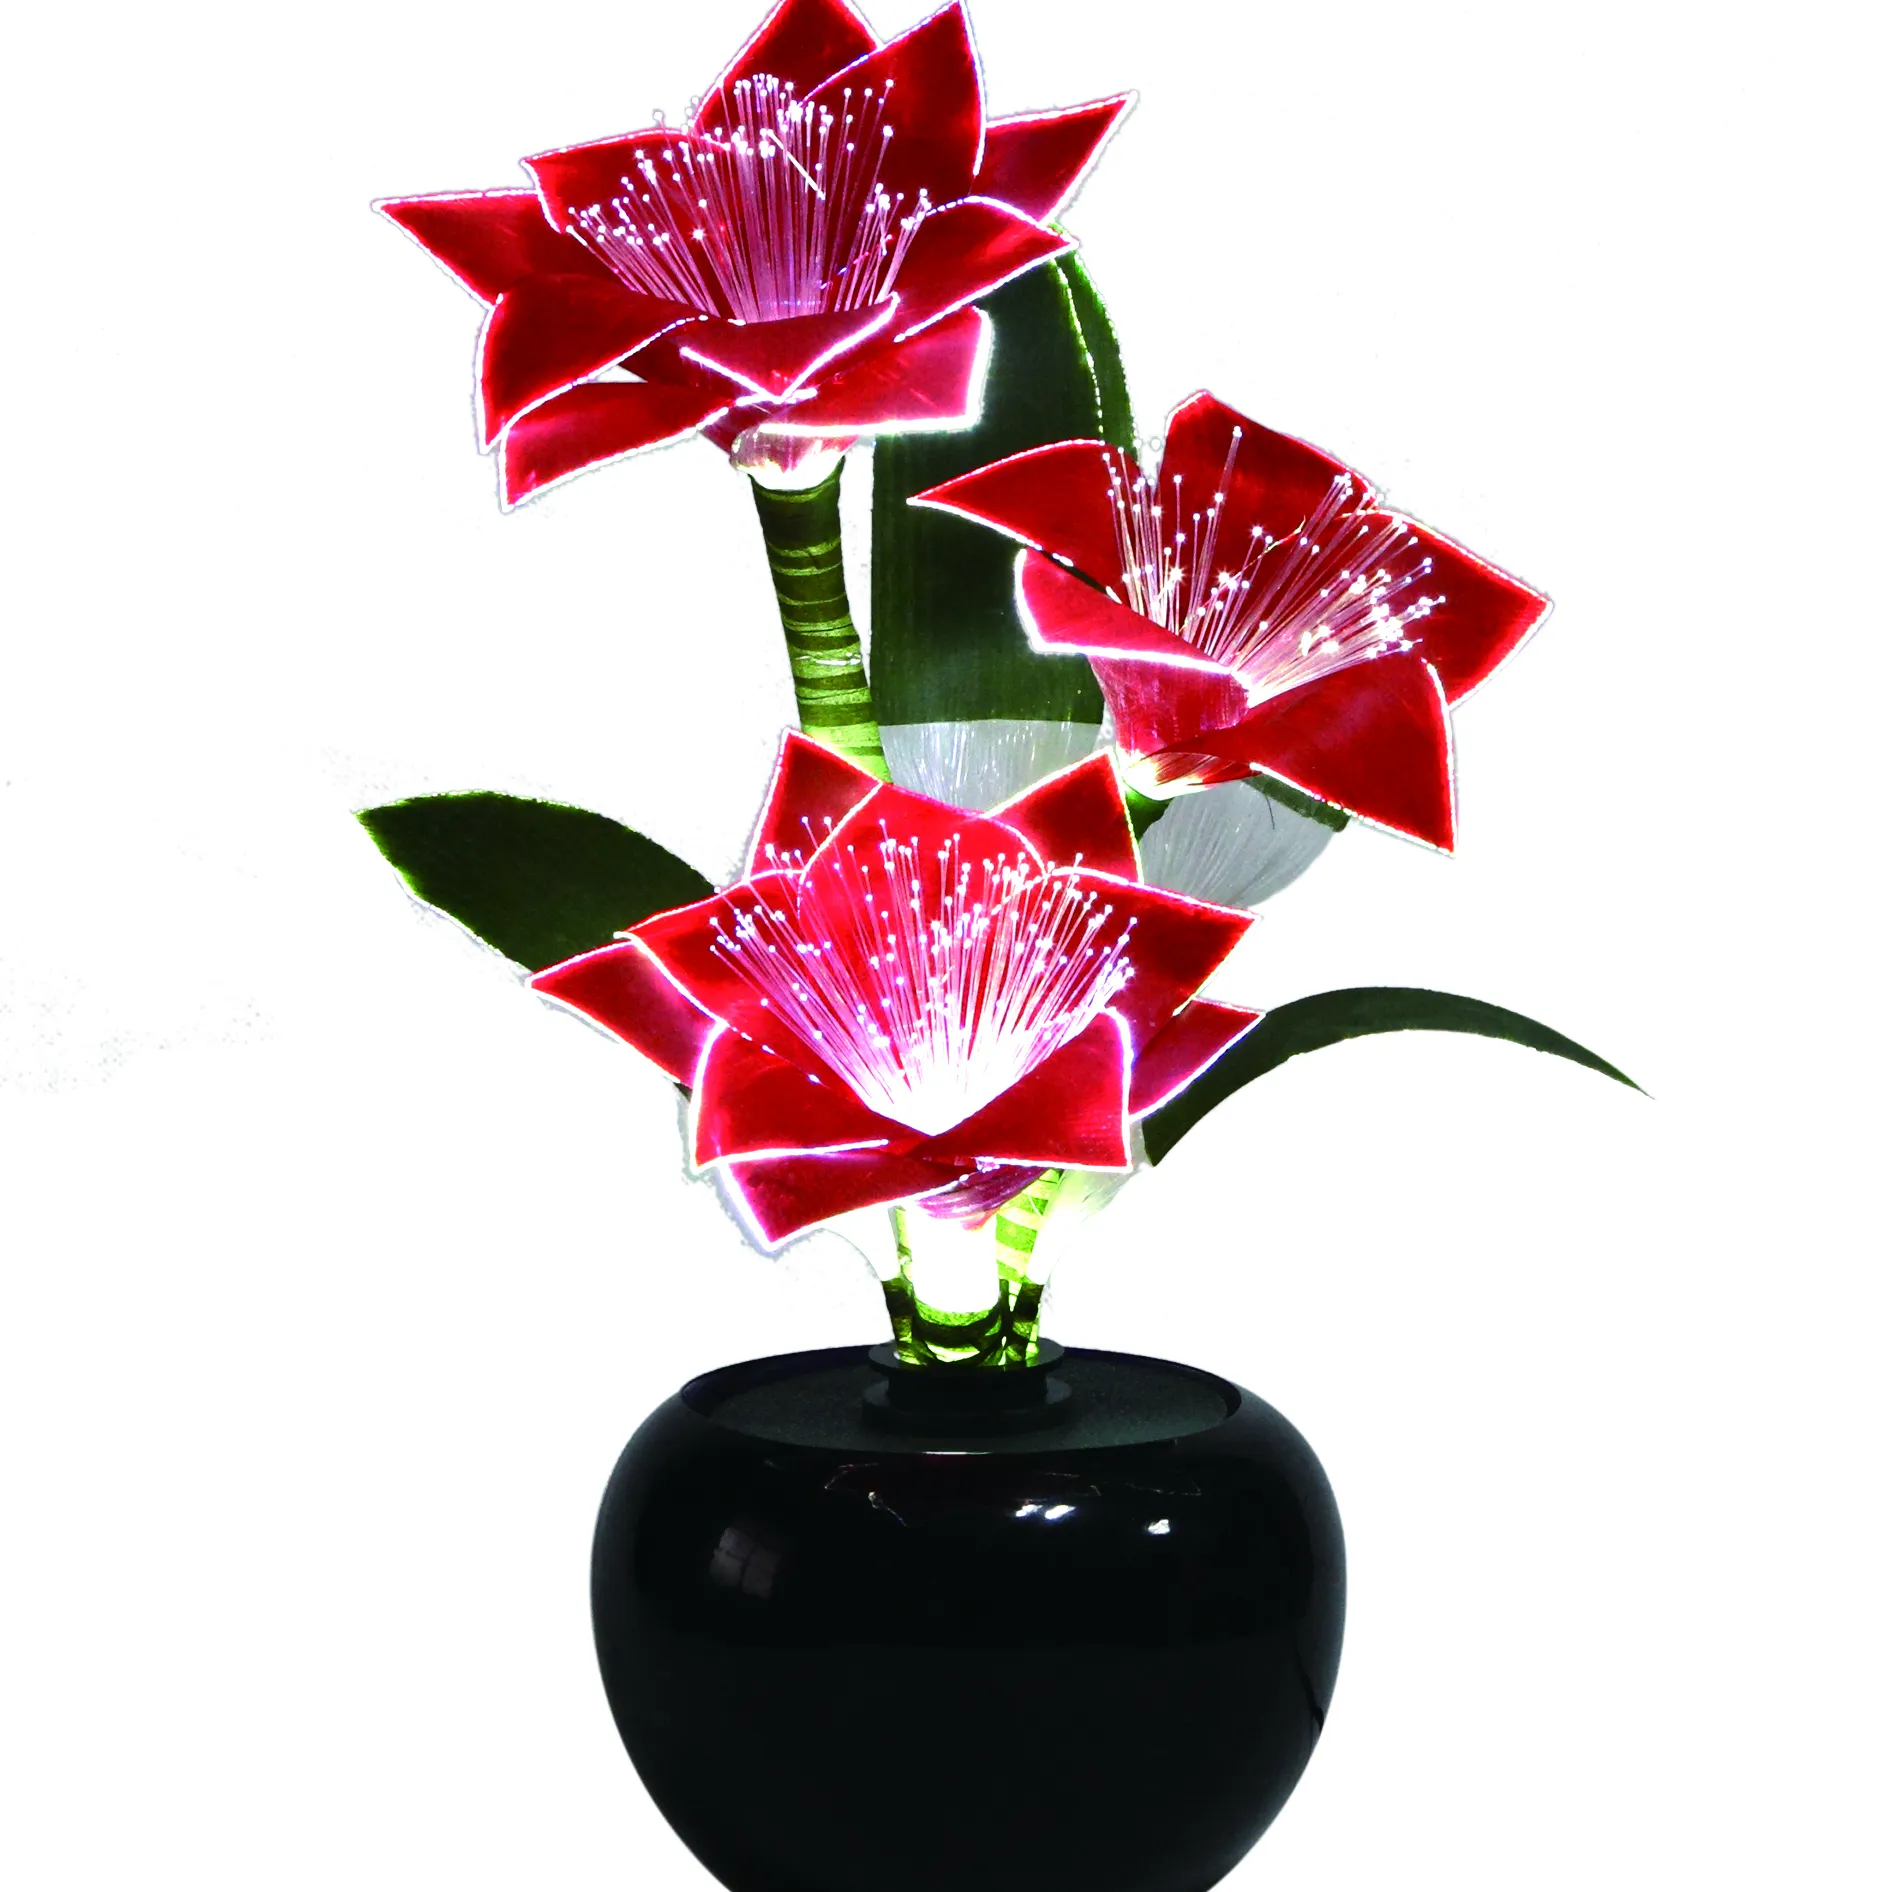 Flor Artificial LED 2023 para pareja de recién casados, artesanía de seda, lámpara de flores hecha a mano, decoración de boda y Navidad, gran oferta